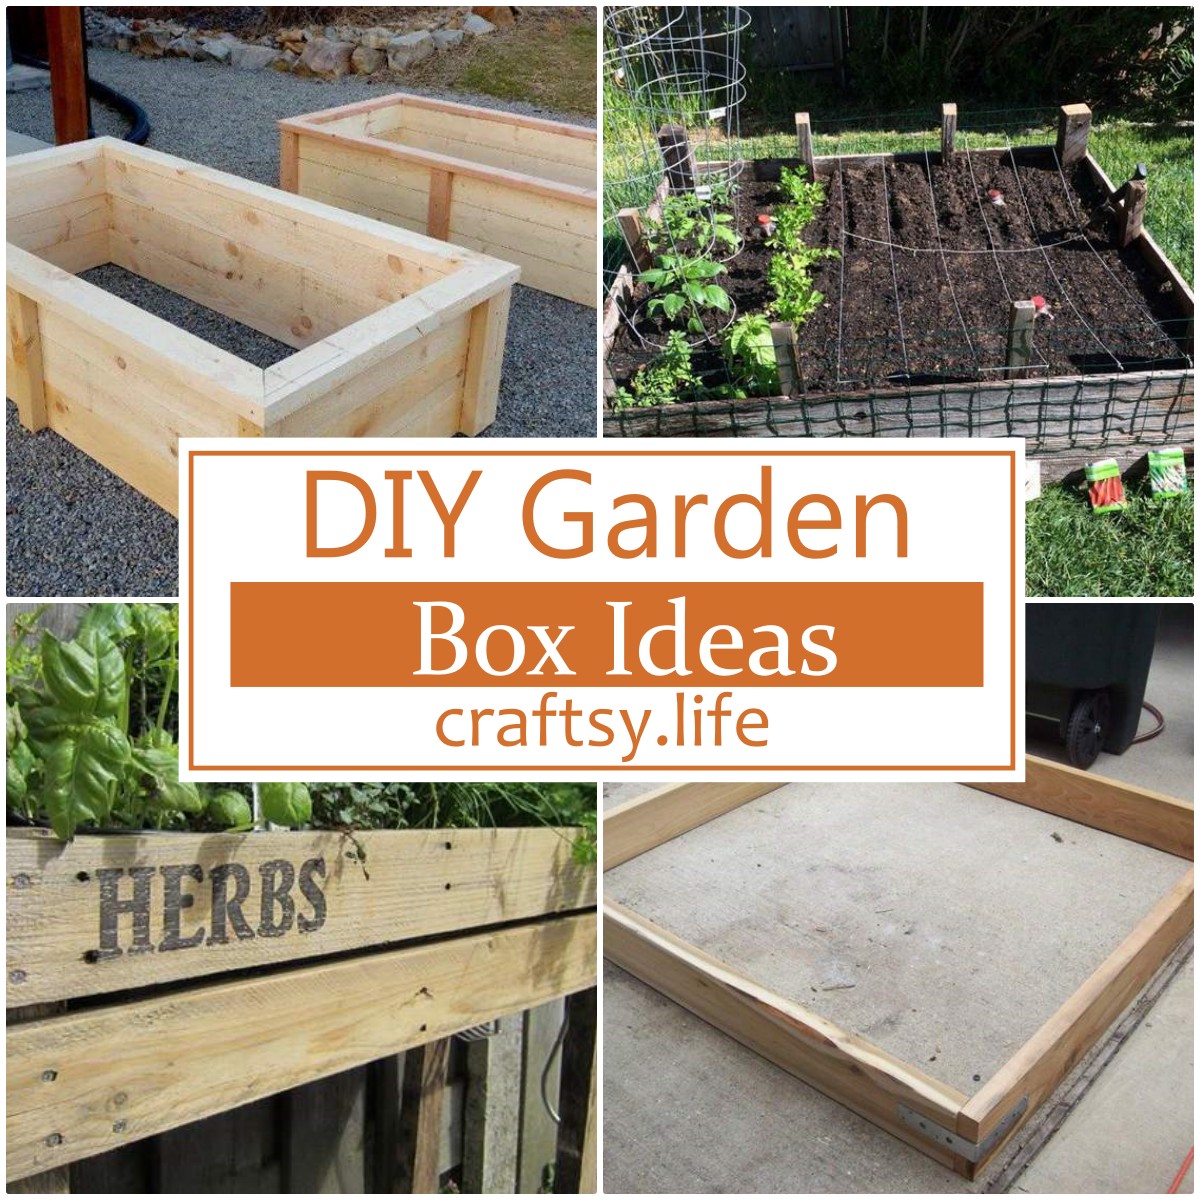 DIY Garden Box Ideas